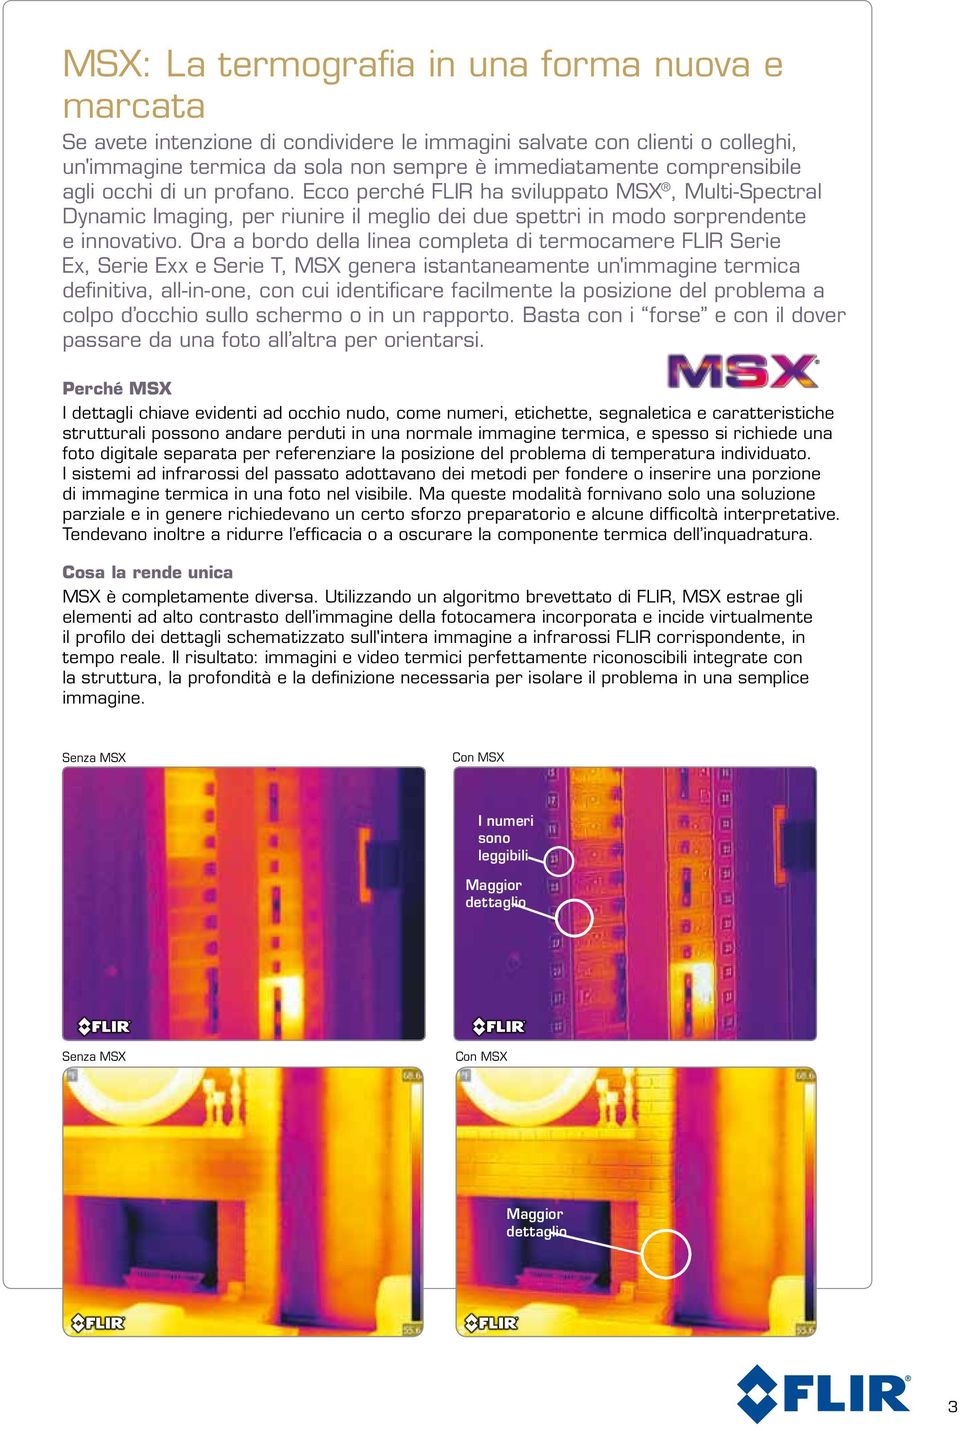 Ora a bordo della linea completa di termocamere FLIR Serie Ex, Serie Exx e Serie T, MSX genera istantaneamente un'immagine termica definitiva, all-in-one, con cui identificare facilmente la posizione